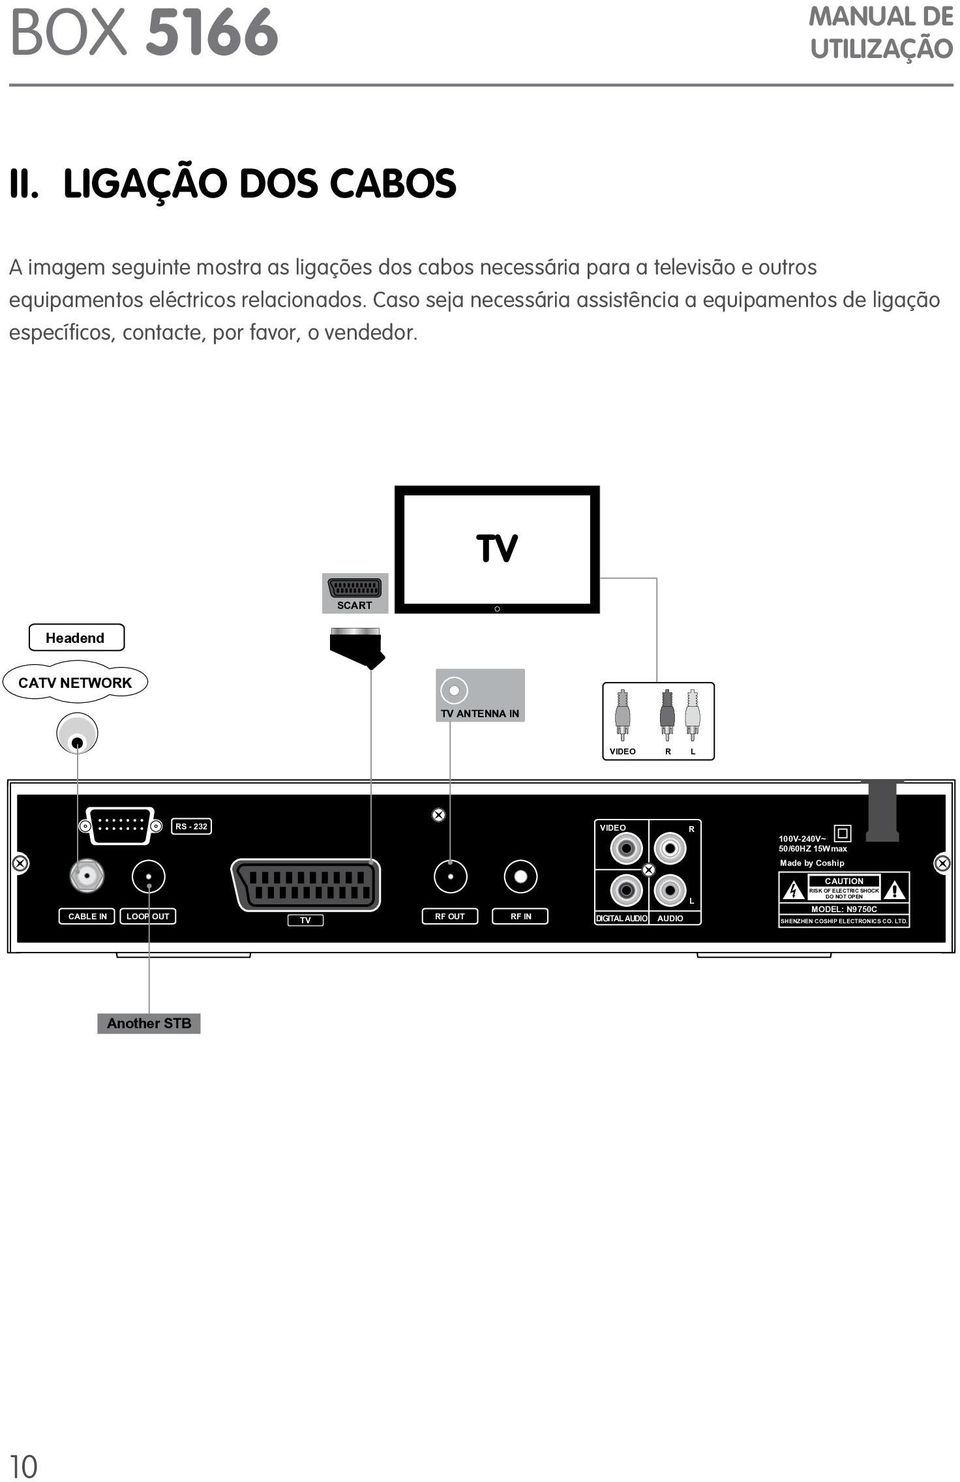 Prefácio TV SCART Headend CATV NETWORK TV ANTENNA IN VIDEO R L RS - 232 VIDEO R 100V-240V~ 50/60HZ 15Wmax Made by Coship CAUTION CABLE